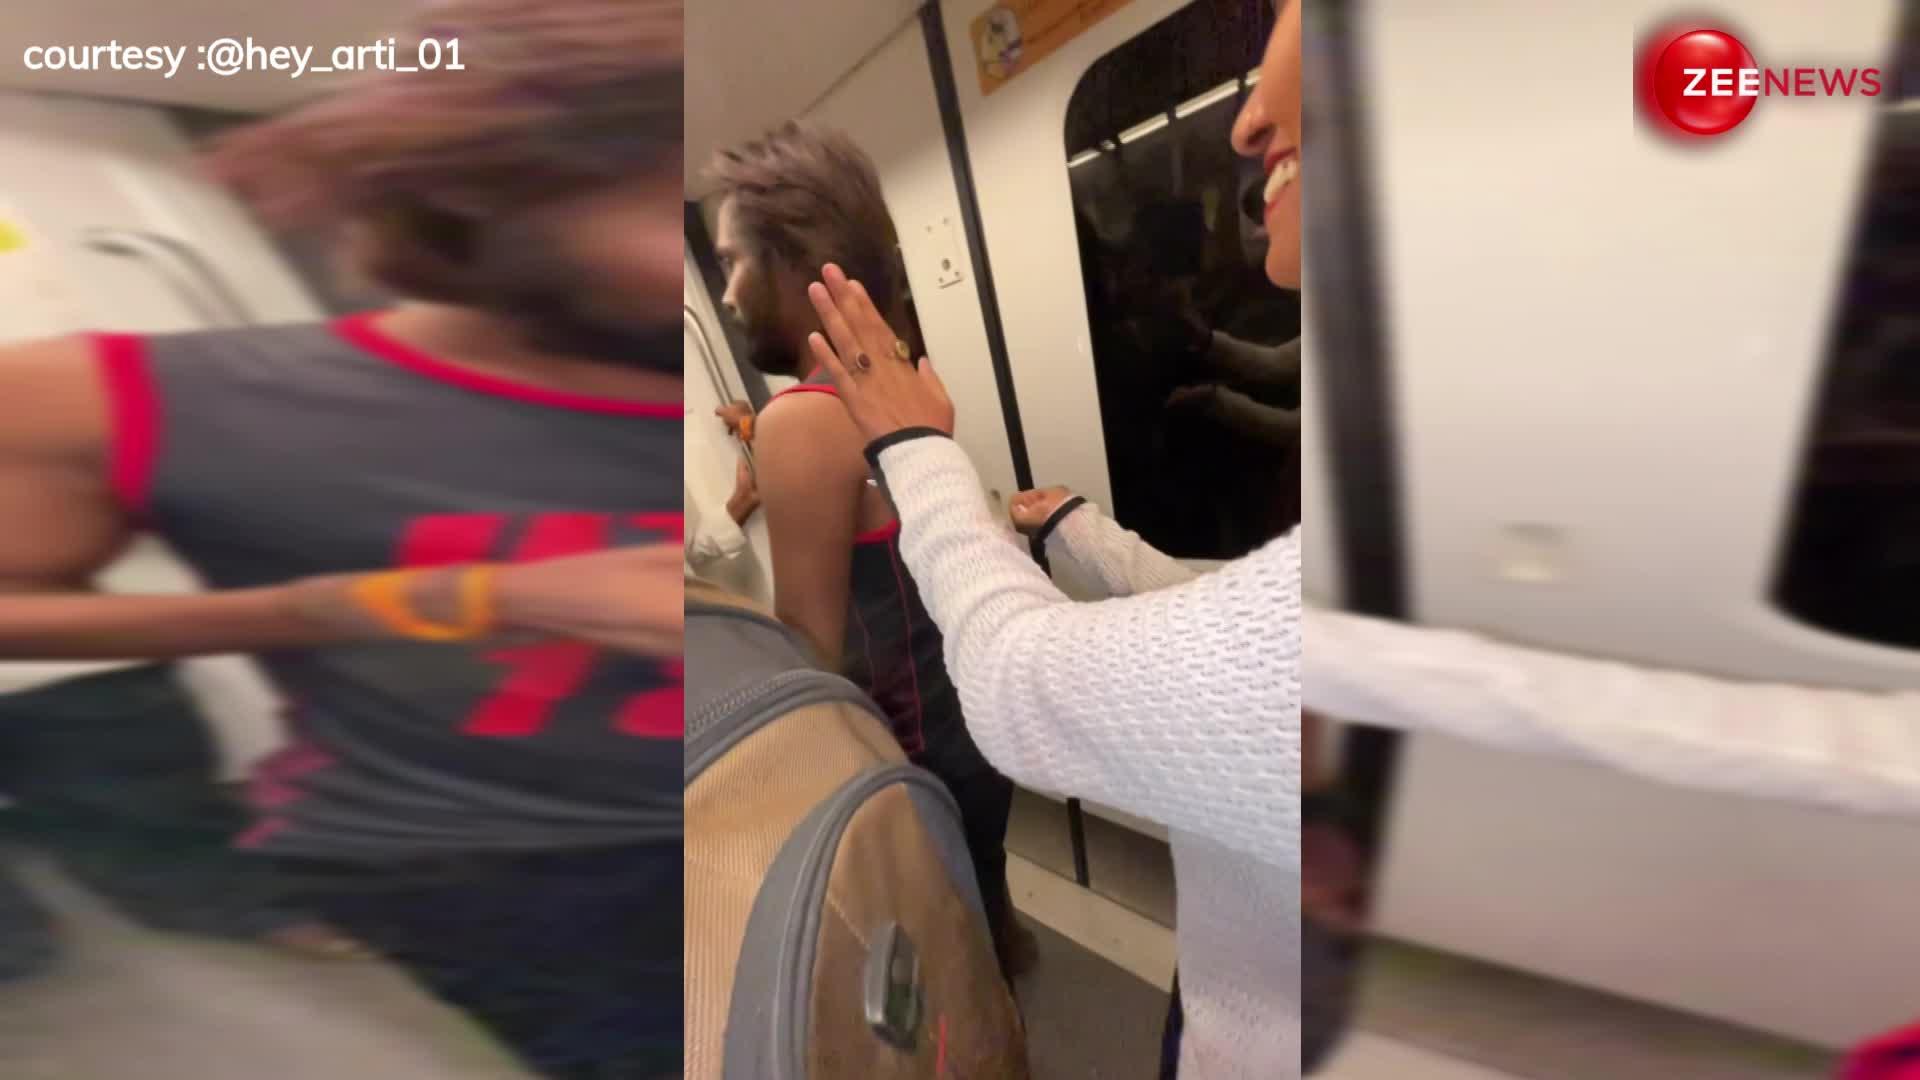 delhi metro में नया कारनामा, लड़की ने दिया प्रेग्नेंसी का सबूत, इंटरनेट पर बवाल काट रहा कपल का ये वीडियो....